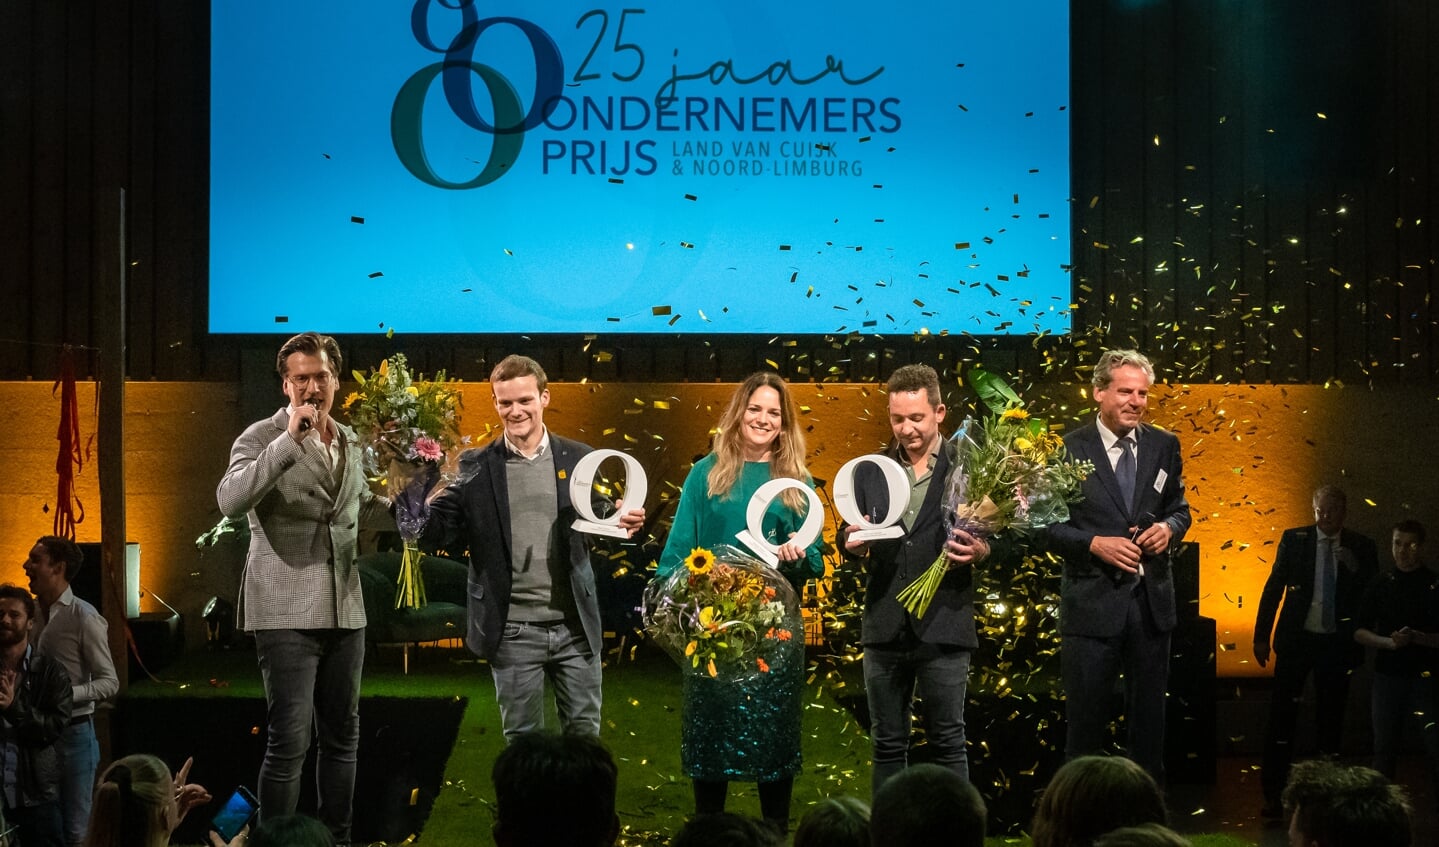 Marloes Kepser wist de 25ste ondernemersprijs te bemachtigen. (foto: Patrick Bongartz)